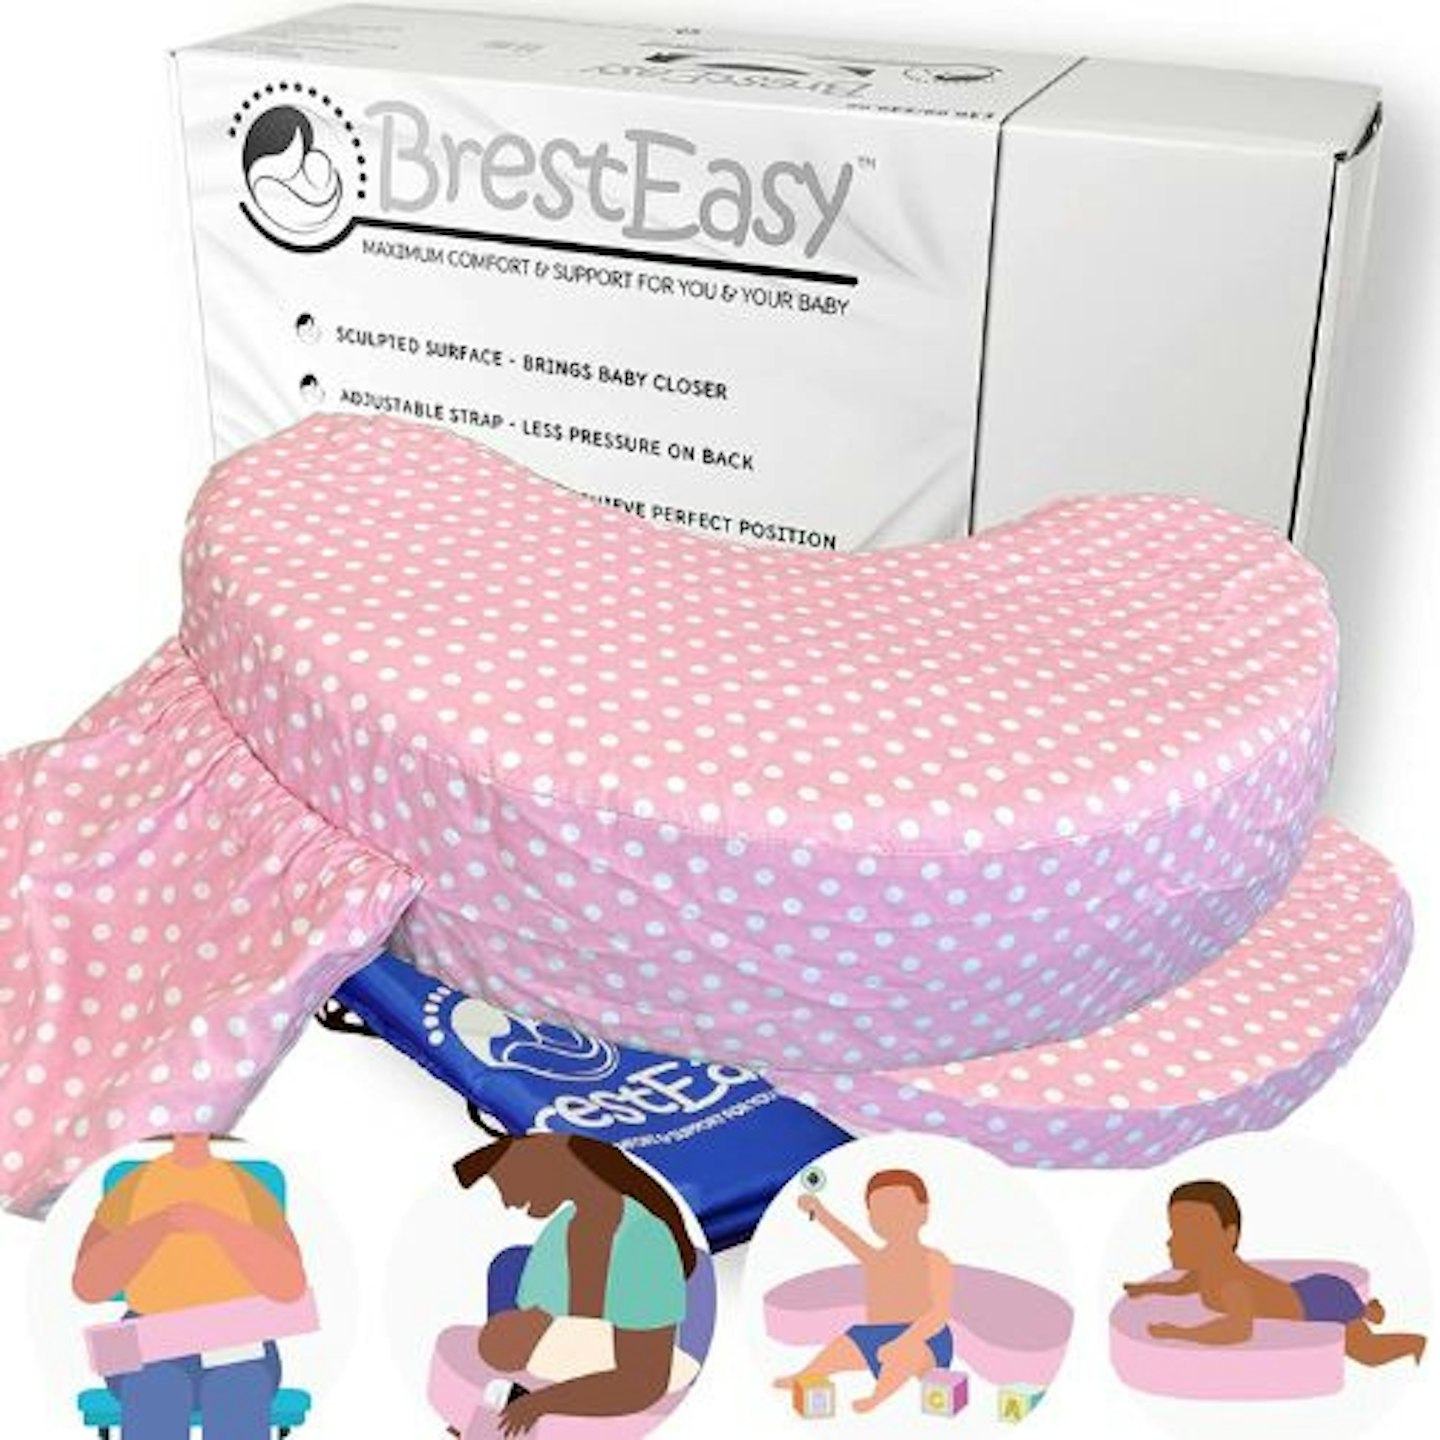 BrestEasy™ - Breastfeeding Firm Support Nursing Pillow